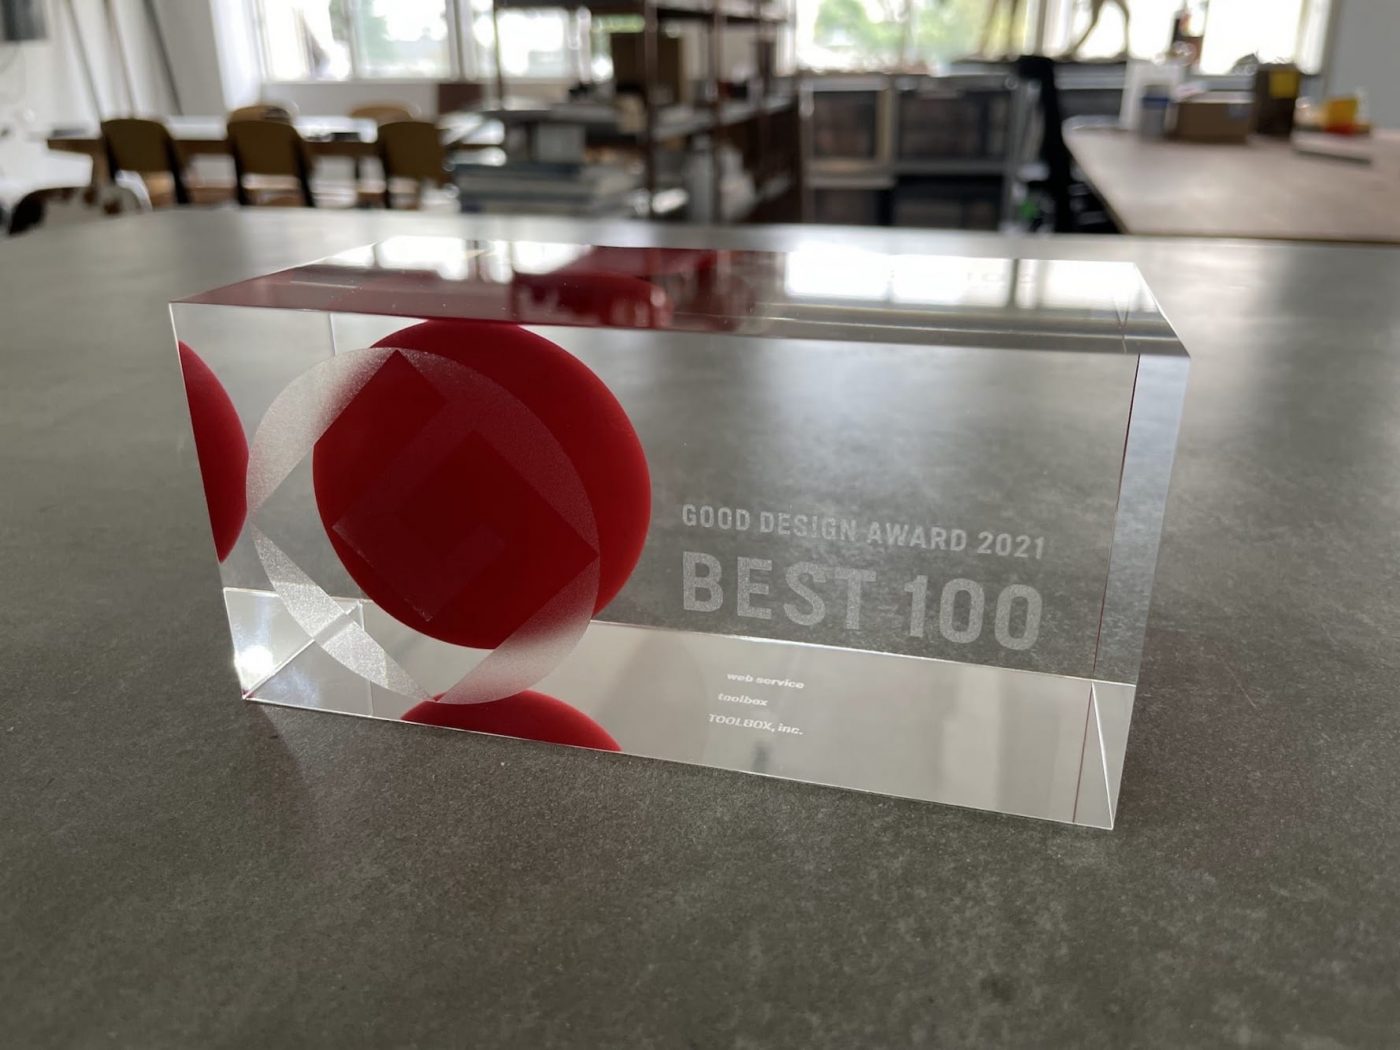 BEST100受賞のトロフィー。見る角度によって中の赤い丸が球体に見えるグッドデザイン。